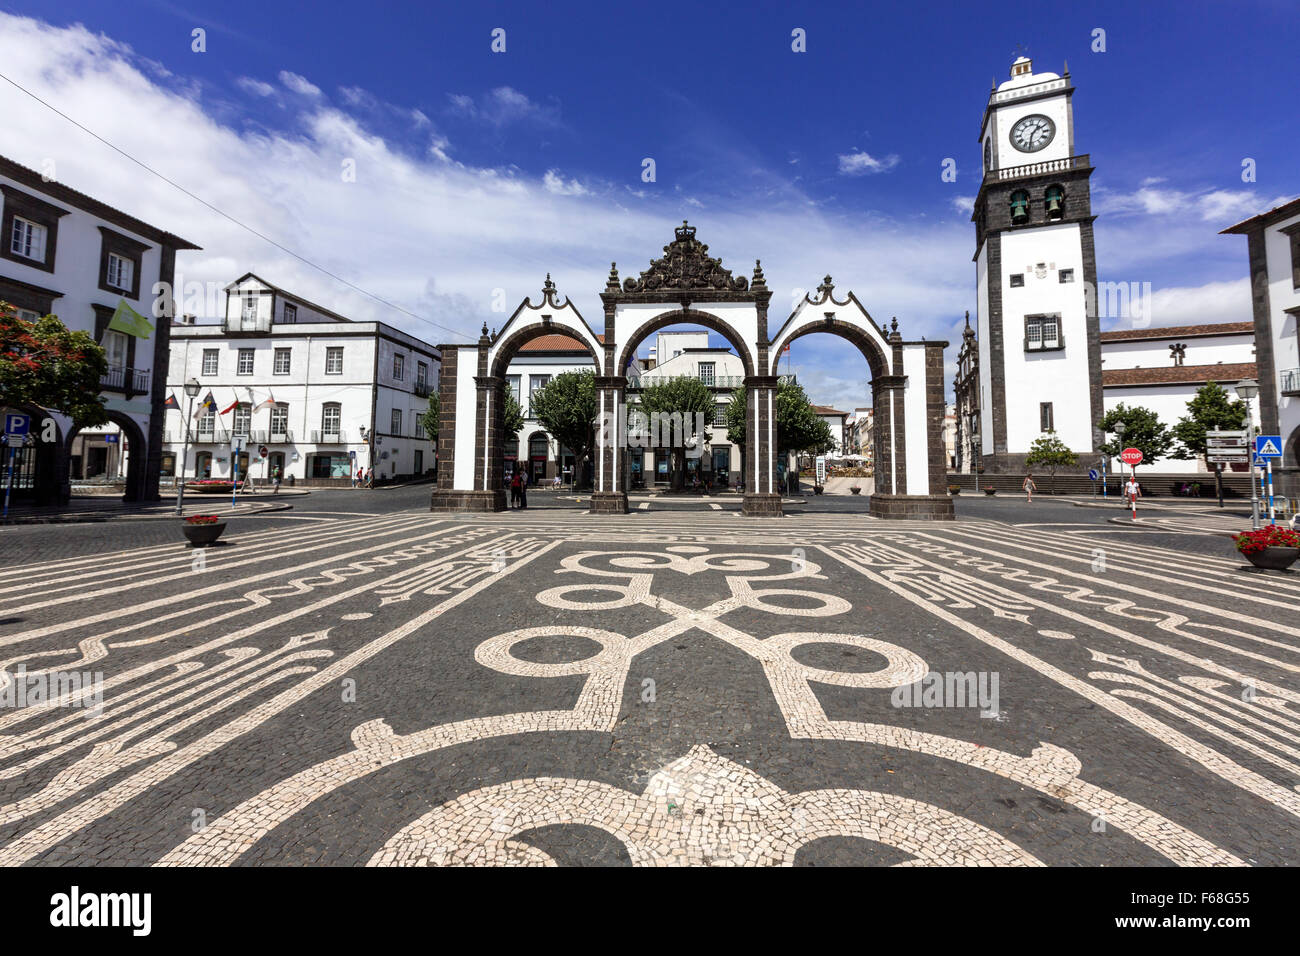 The Portas da Cidade, Gates to the City, and the tower of Church of St. Sebastian in Ponta Delgada, São Miguel, Azores, Portugal Stock Photo